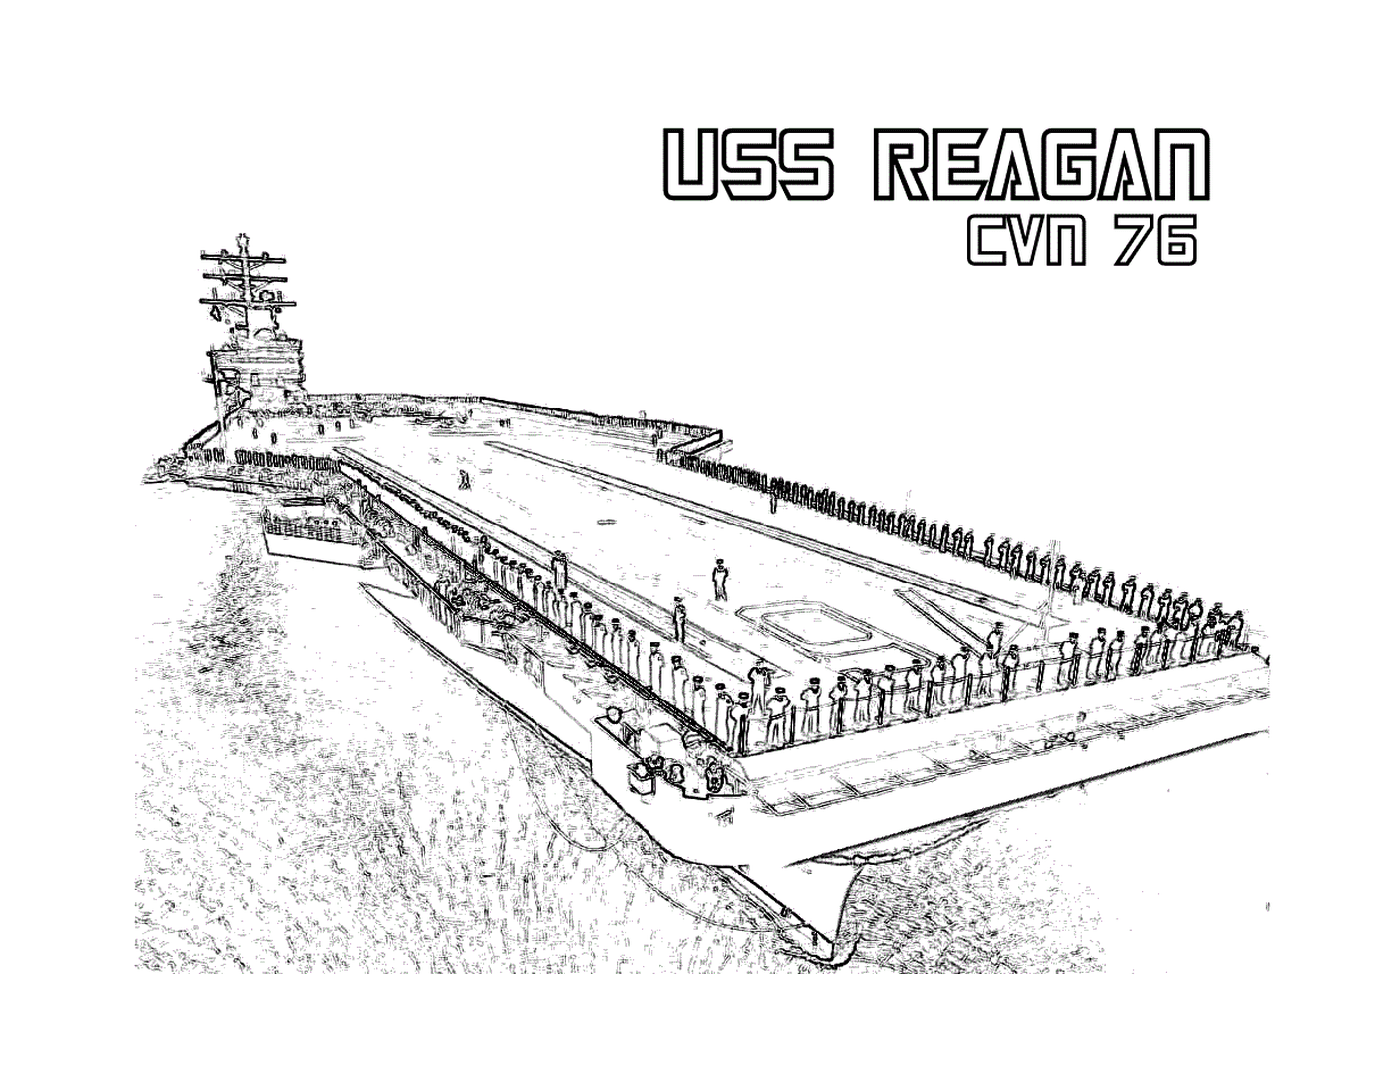  Die USS Reagan CVN-70 